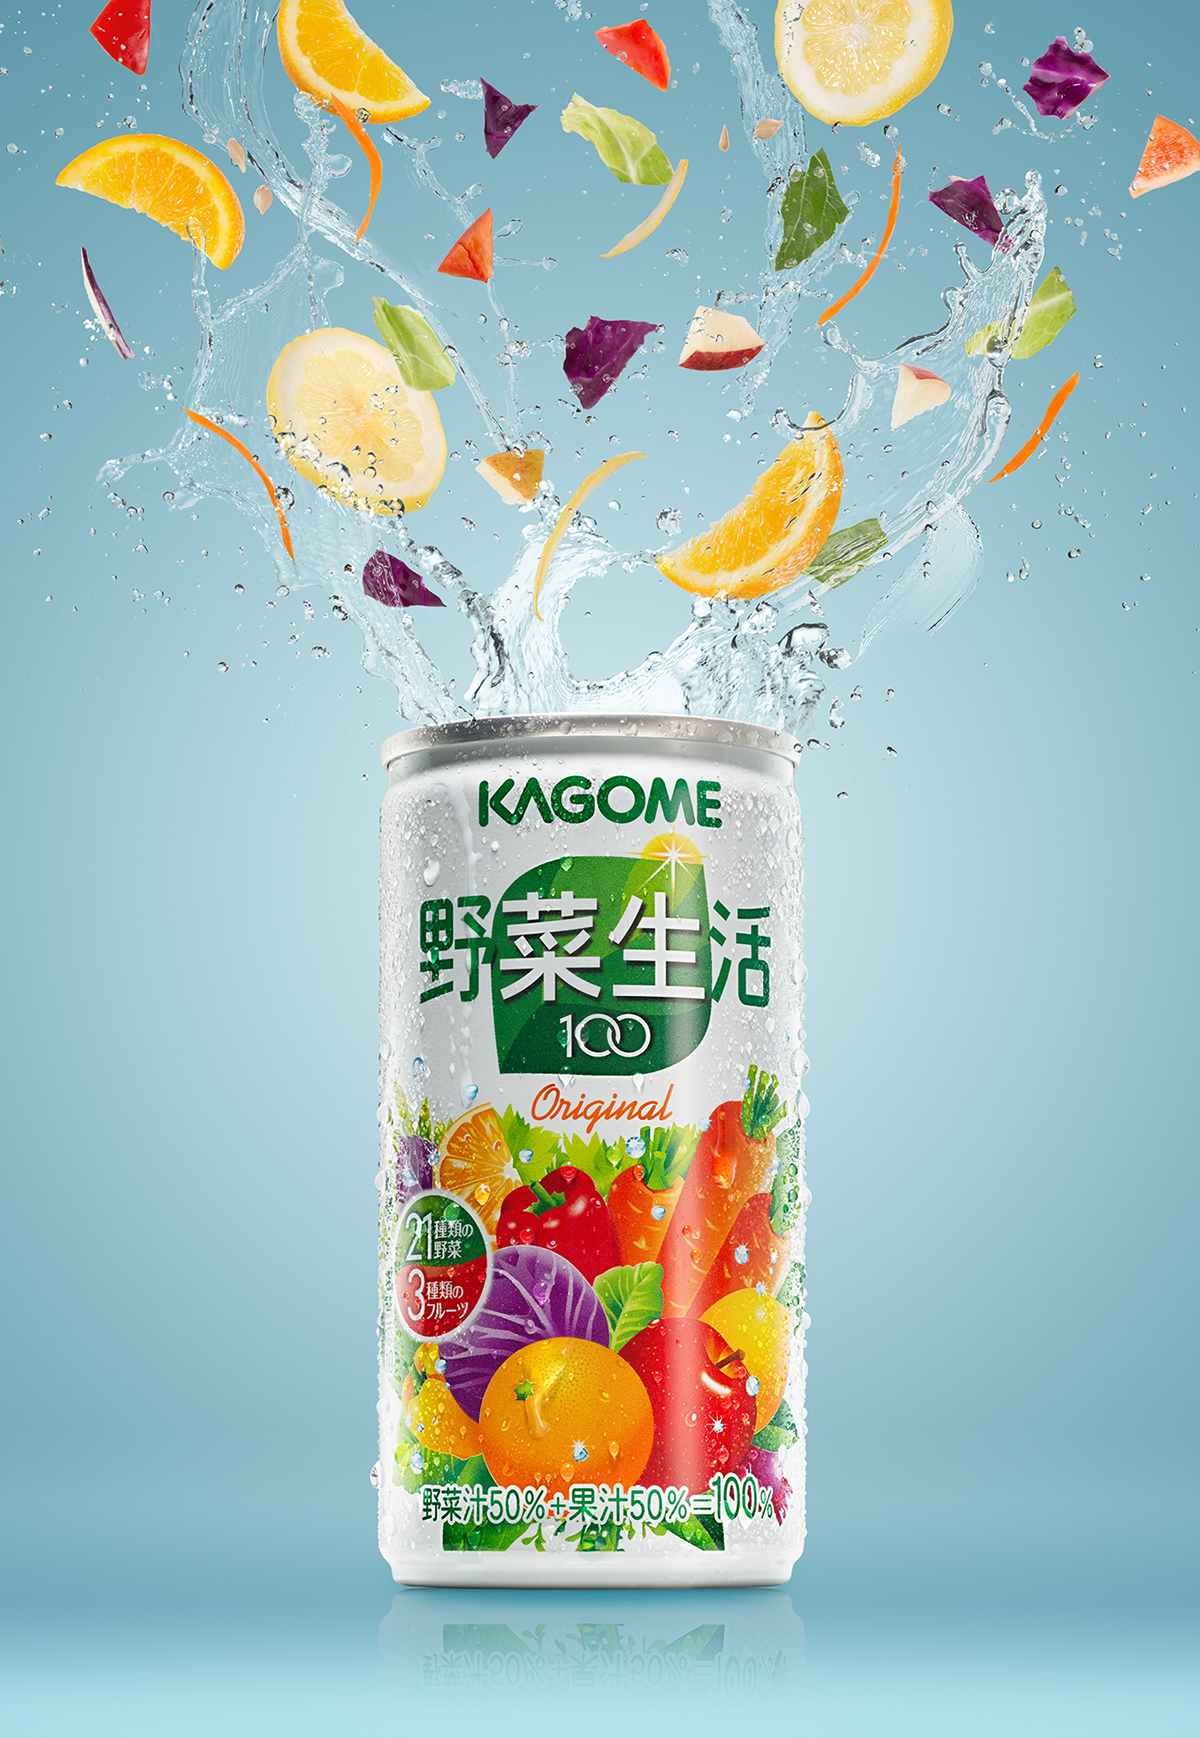 wild drinks juice kagome japanese japan speed vegetable beverages splash water